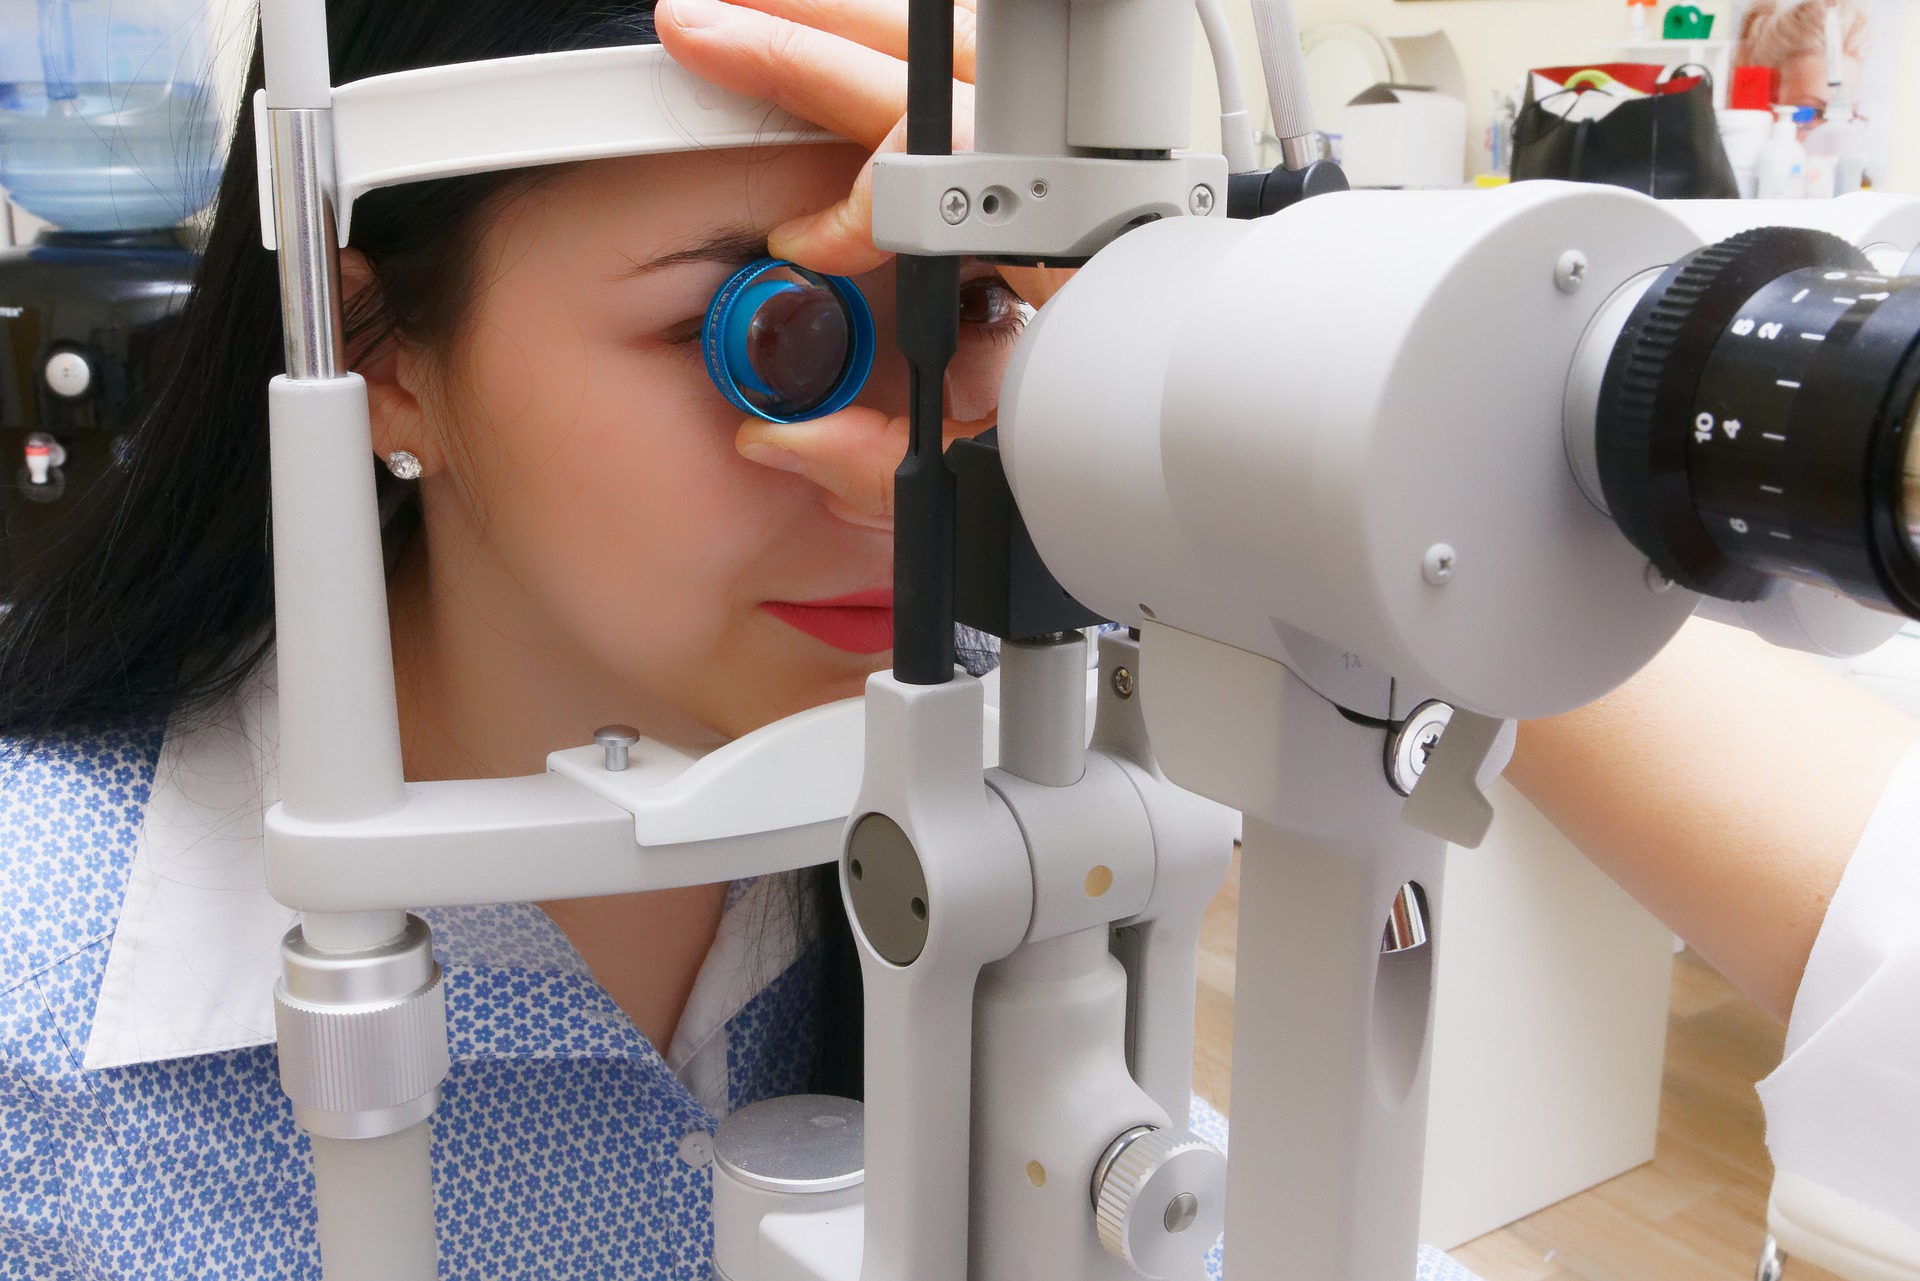 Untersuchung Spaltlampe Patientin Augenbeschwerden Augenerkrankung AMD grauer Star Glaukom Katarakt